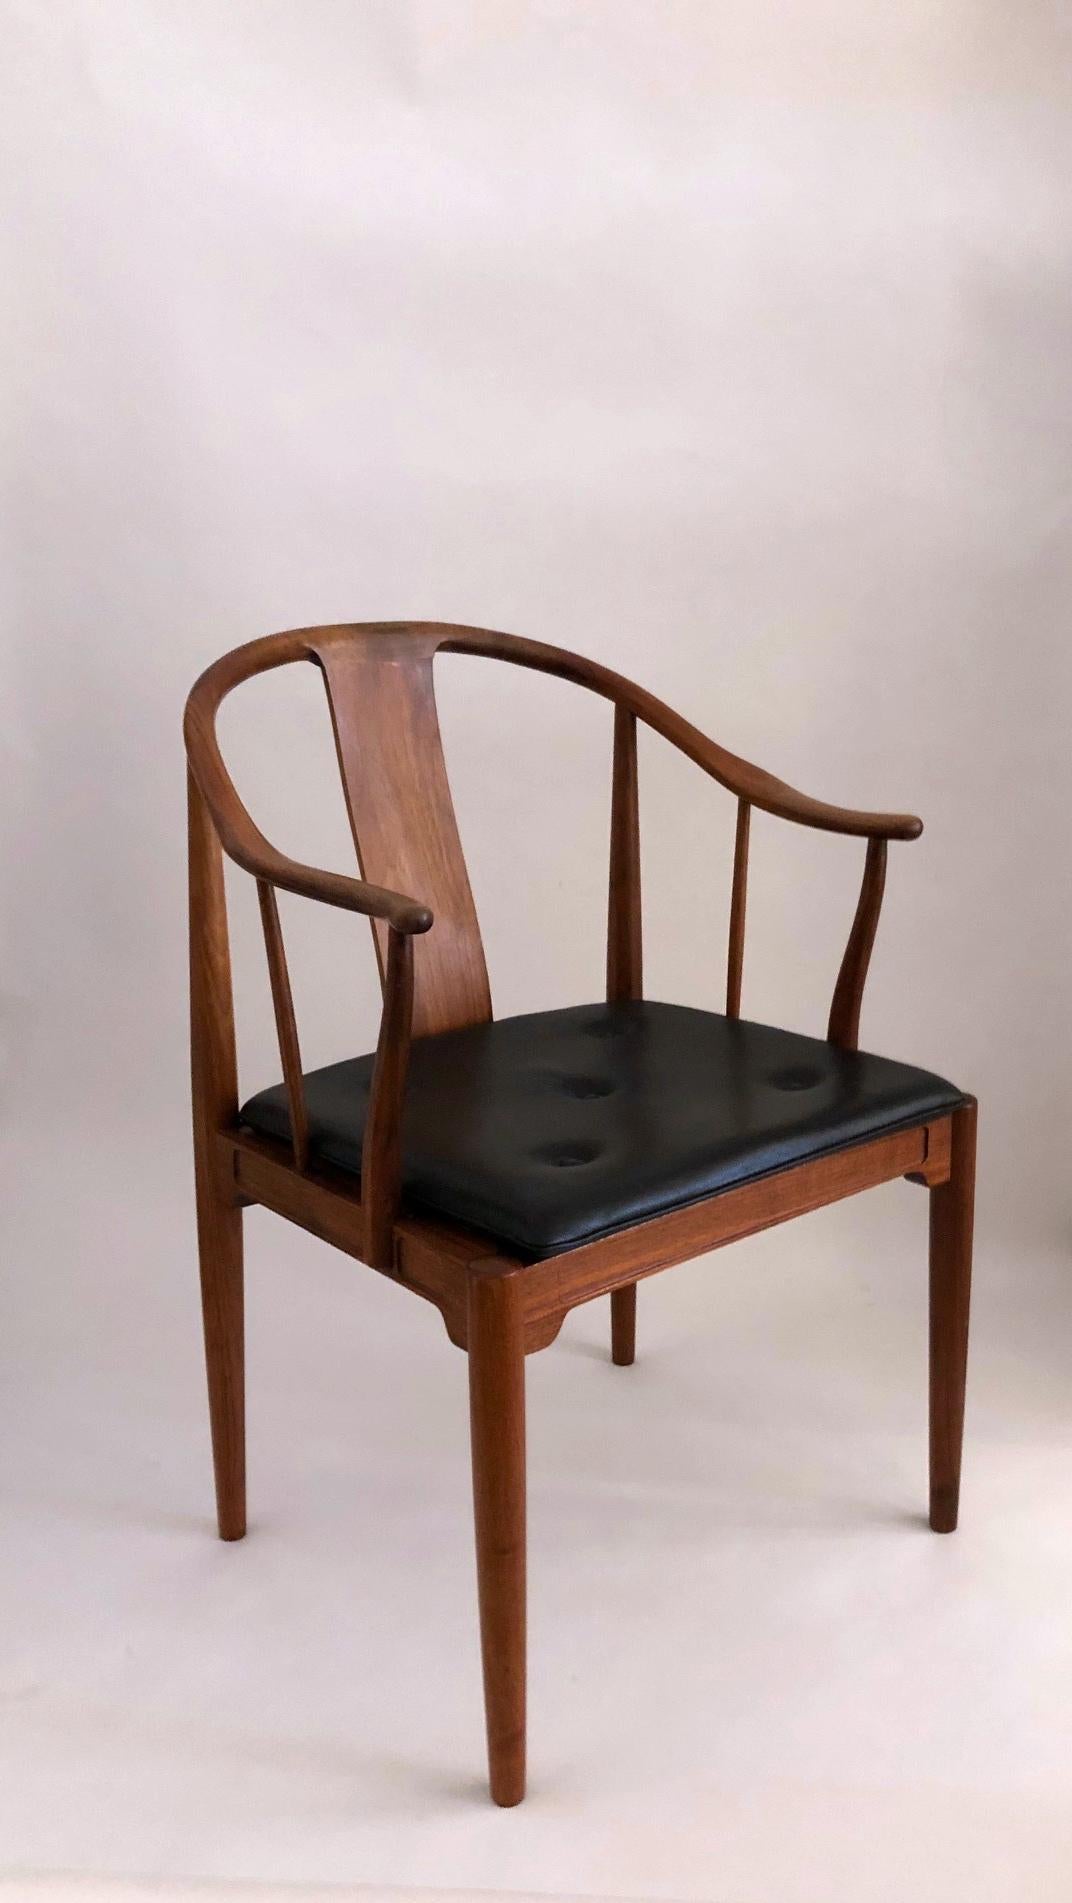 Hans J. Wegner:
 Ein Sessel aus Nussbaumholz 